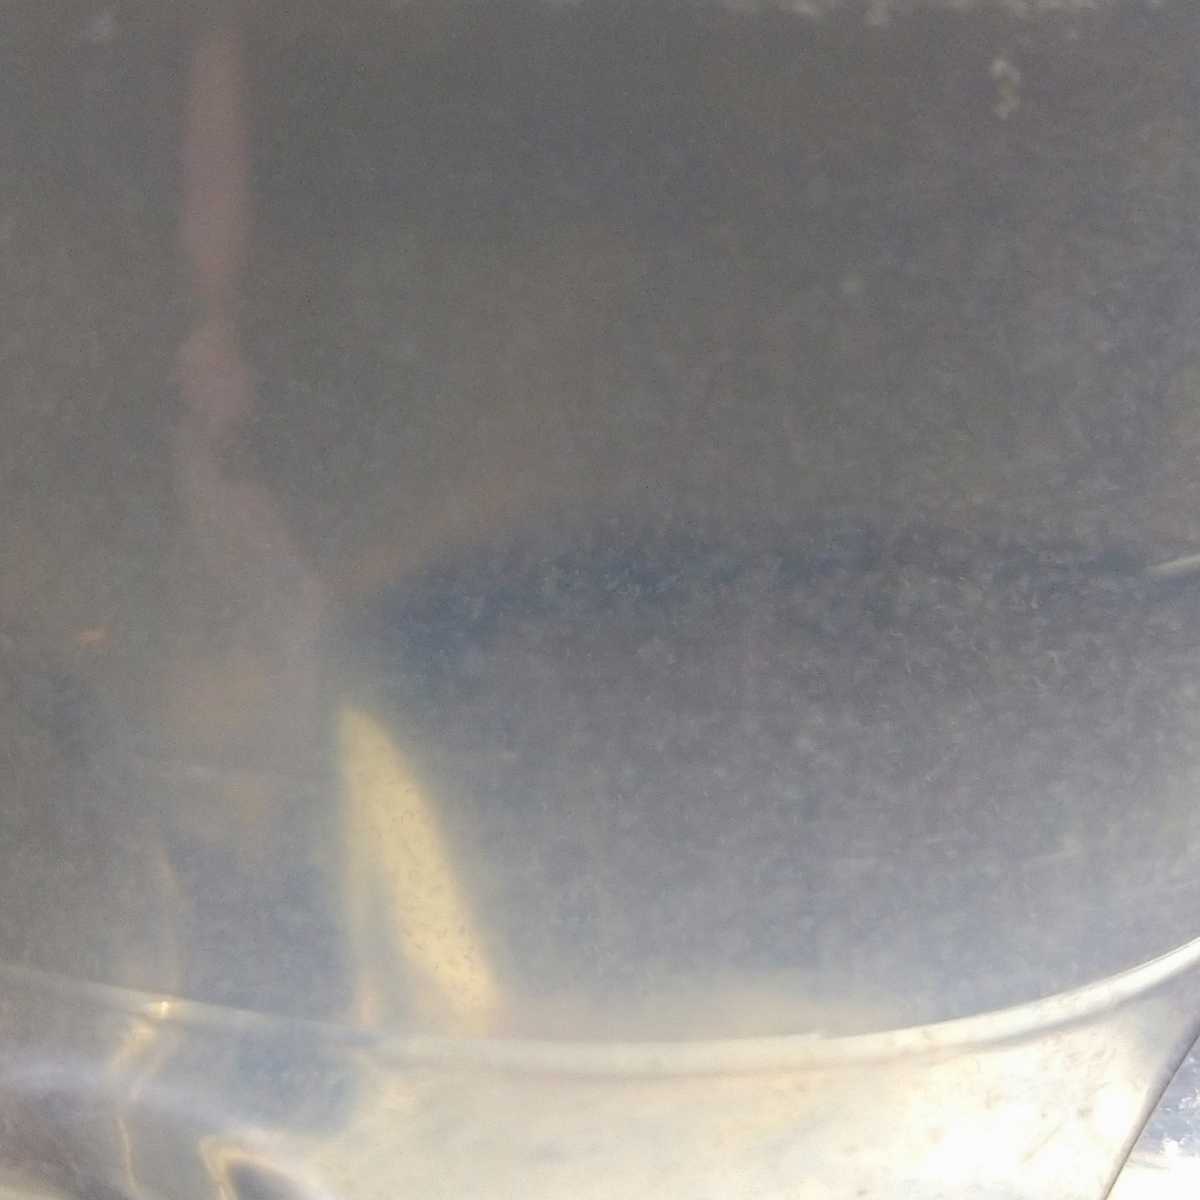 ゾウリムシ 培養set 培養方法付 ゾウリムシ種水約100mlと餌エビオス錠500mlペットボトル20本分 金魚 メダカ 熱帯魚 錦鯉 稚魚 針子 の餌 水の画像7